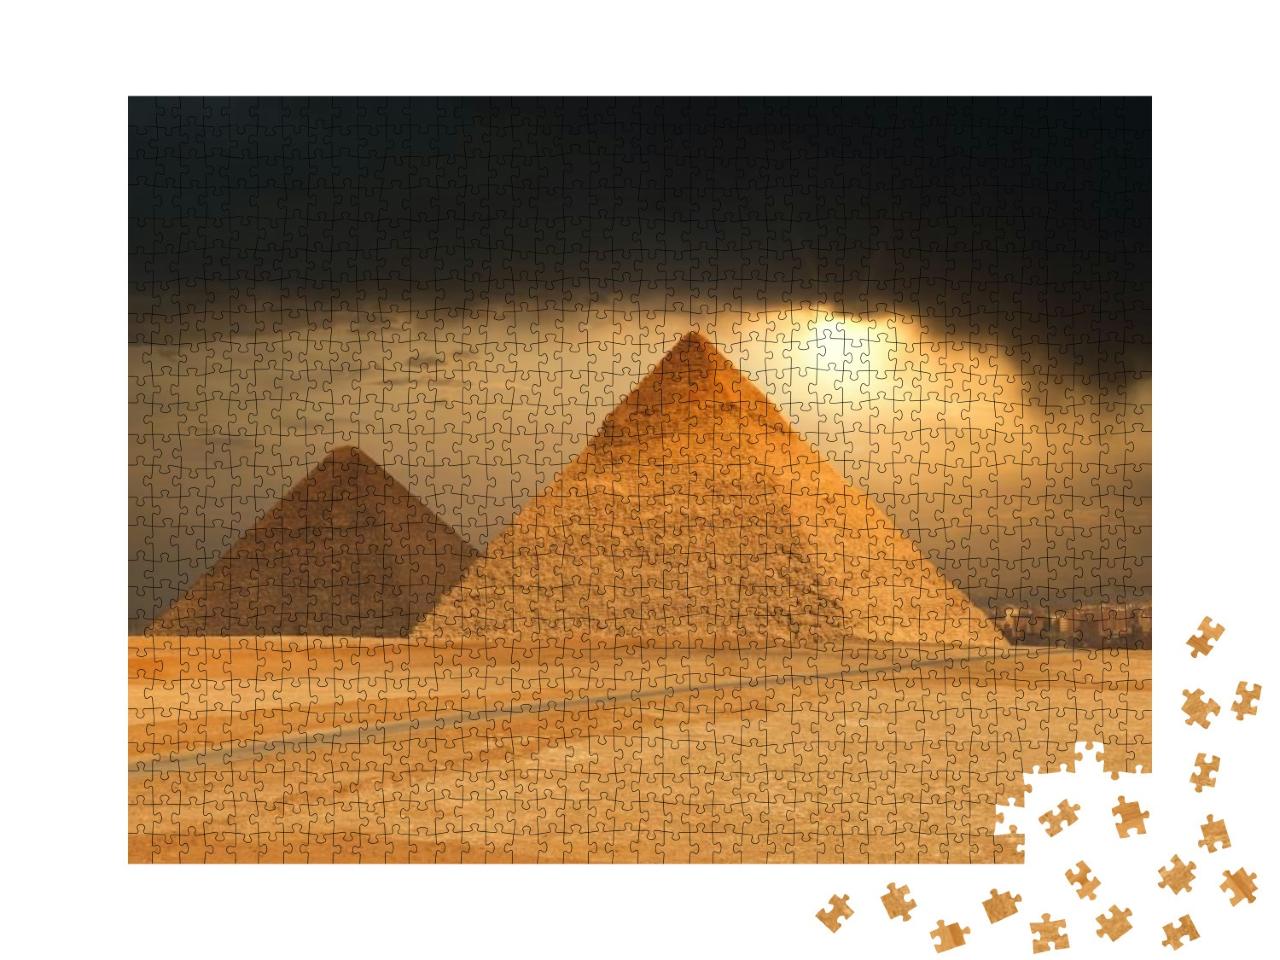 Puzzle 1000 Teile „Die berühmten Pyramiden von Gizeh, Ägypten“